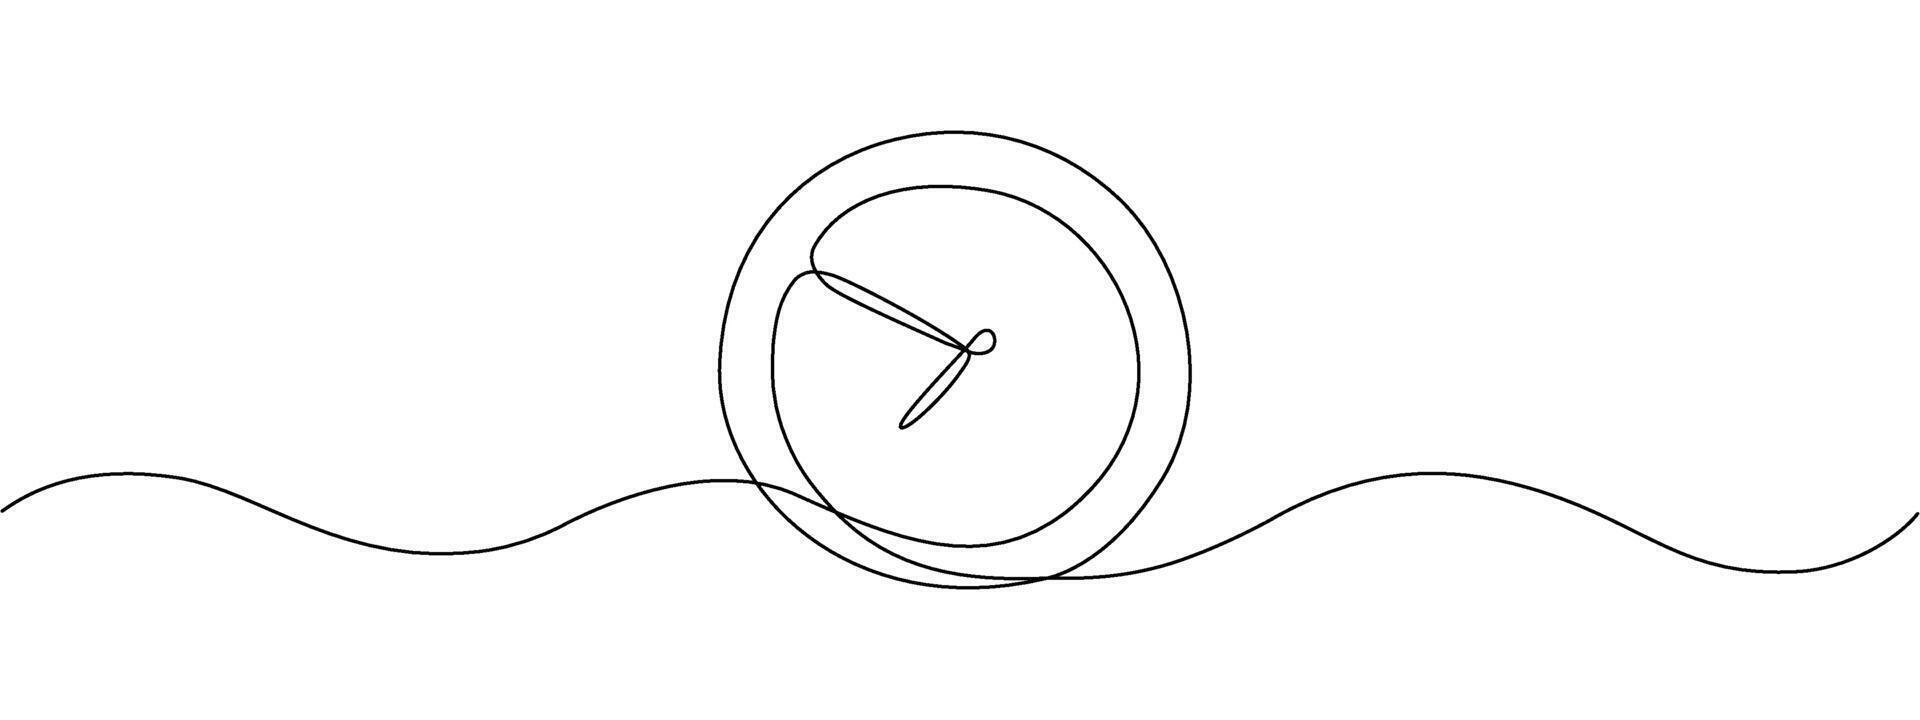 un continuo uno línea dibujo de un reloj. vector ilustración dibujado a mano estilo